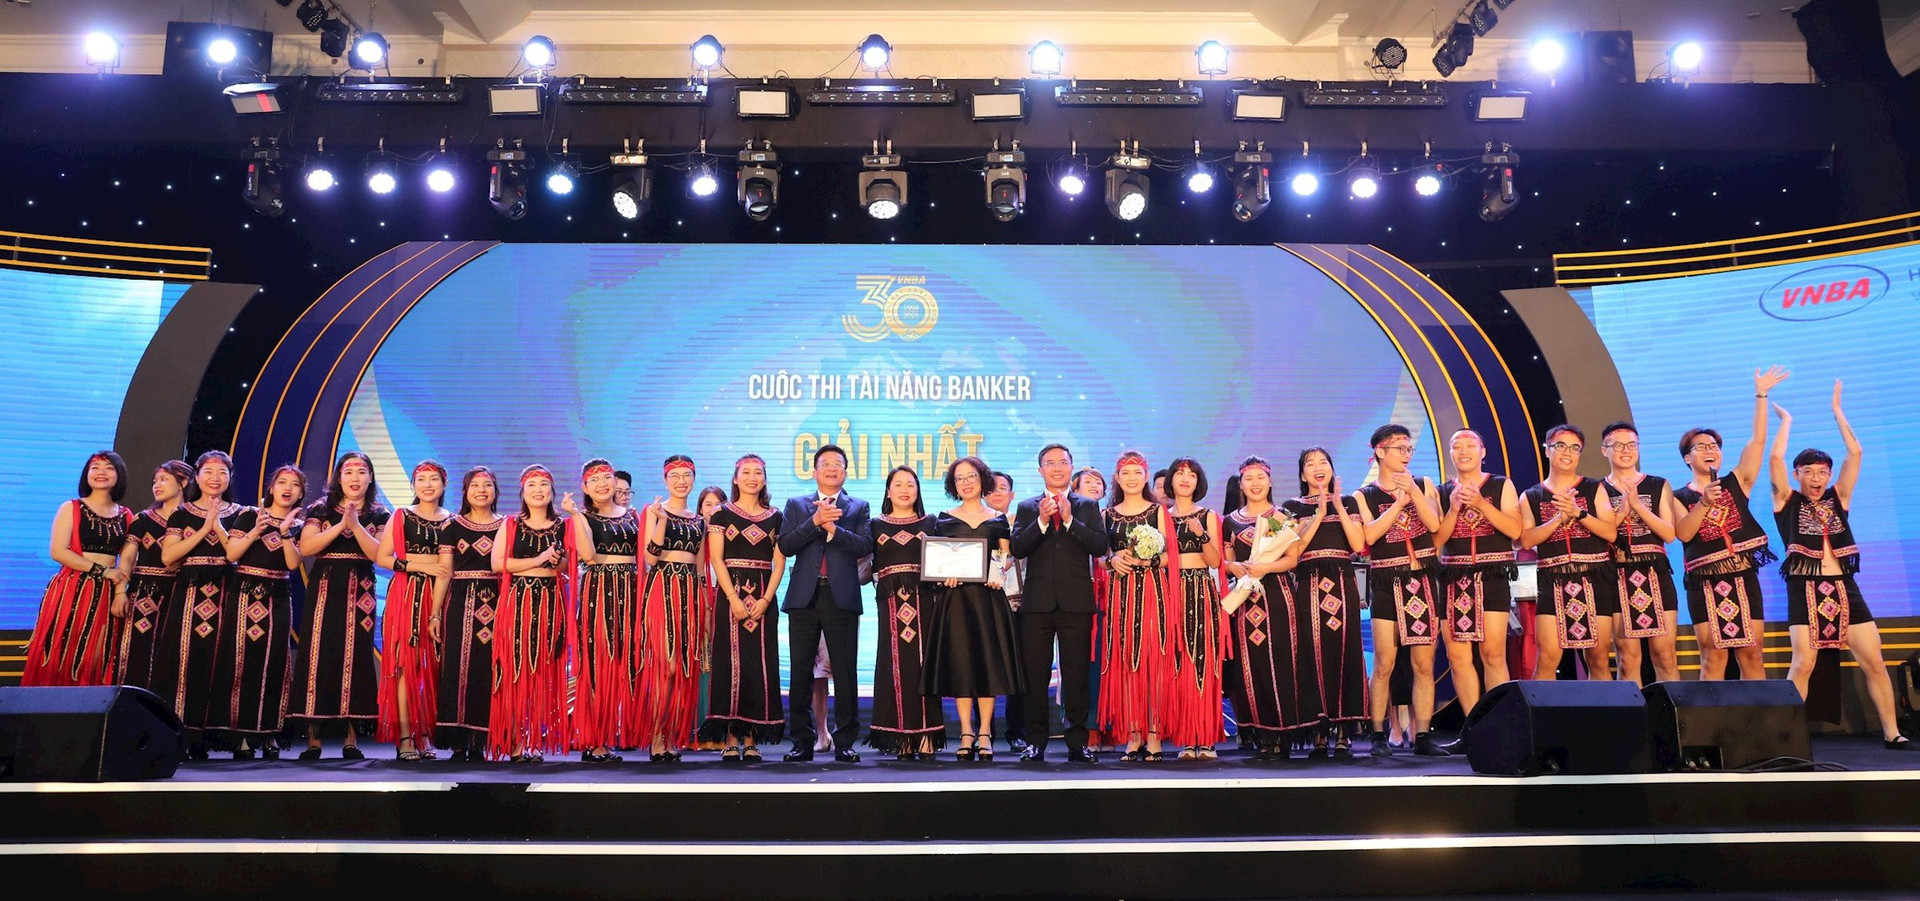 Ông Phạm Đức Ấn - Chủ tịch HHNH và ông Nguyễn Quốc Hùng, Trưởng BTC trao hoa và cúp kỷ niệm cho đội thi đạt giải Nhất Cuộc thi Tài năng Banker.